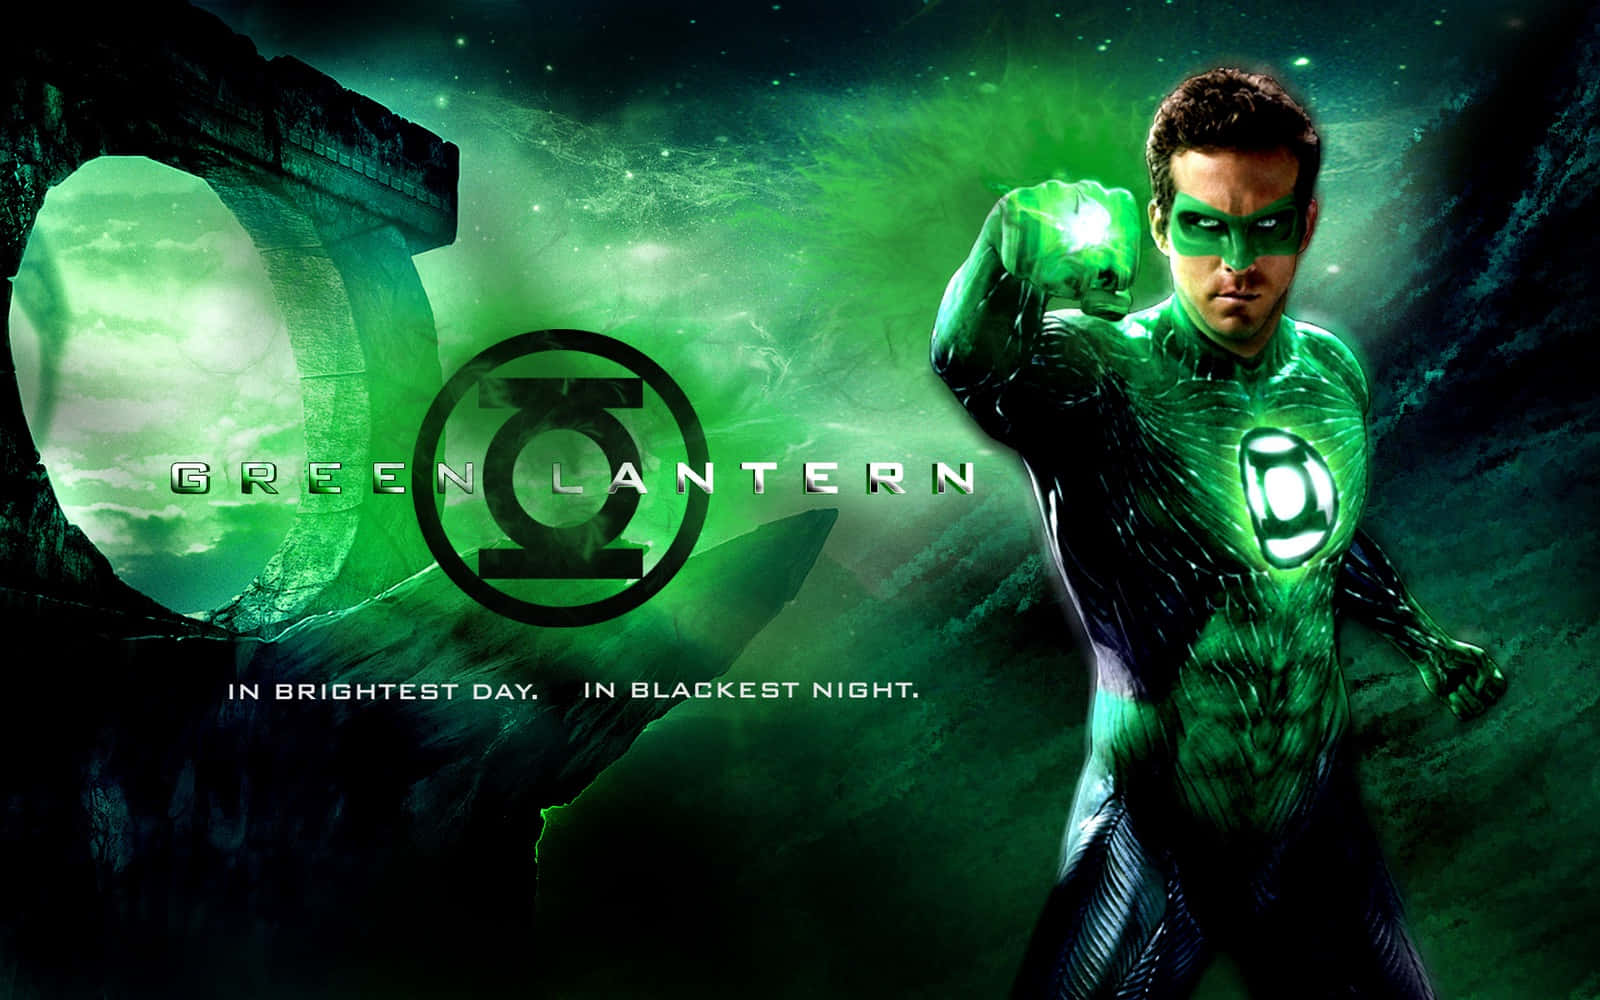 Elsímbolo De Green Lantern Simboliza Poder, Protección Y Esperanza.